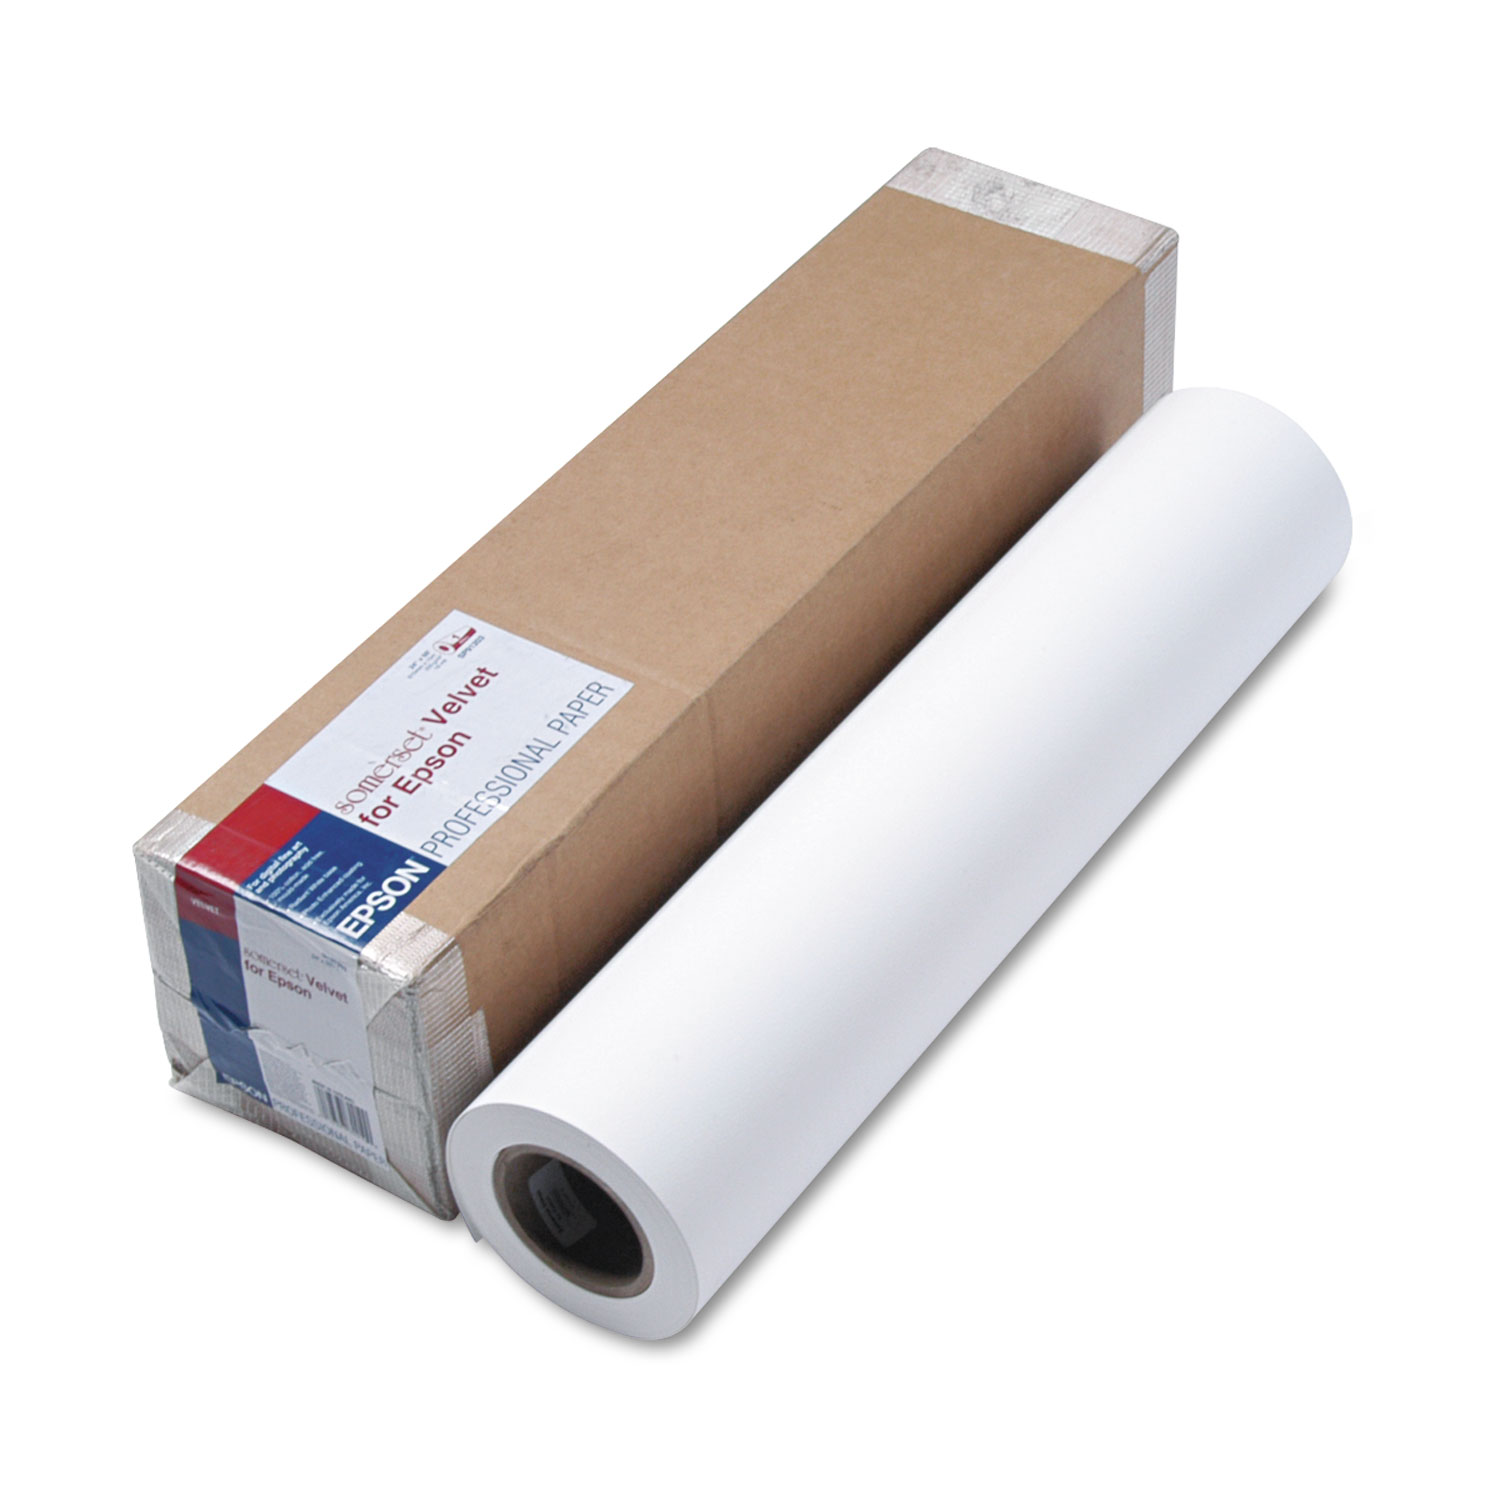 Somerset Velvet Paper Roll, 255 g, 24 x 50 ft, White